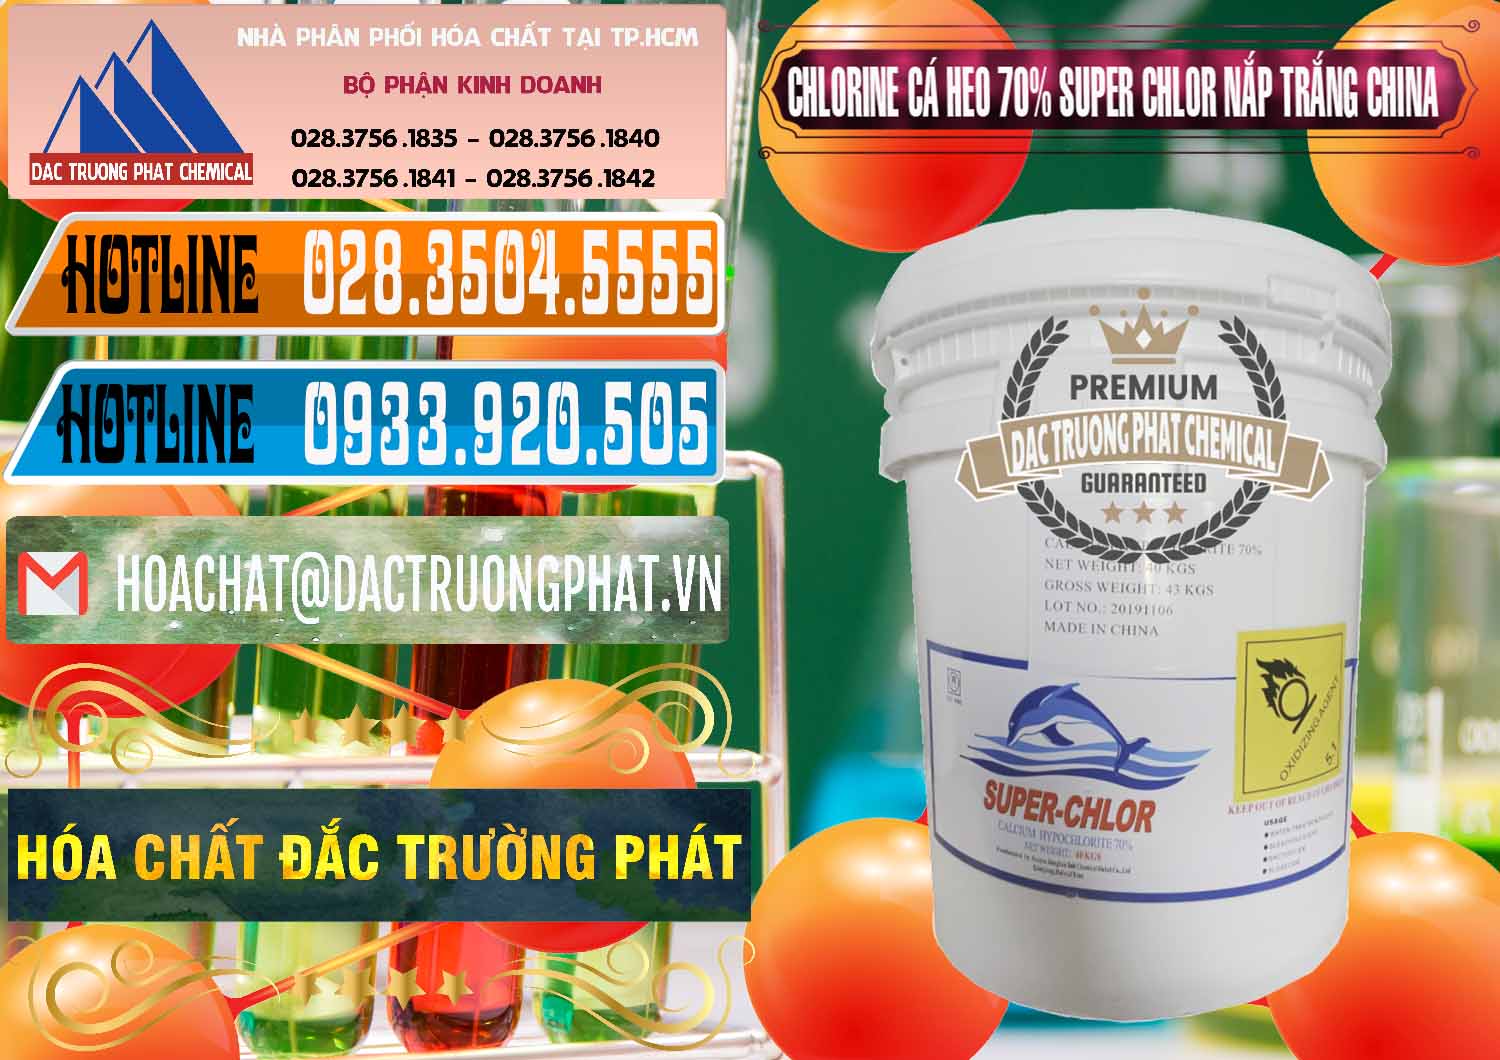 Công ty chuyên cung cấp _ bán Clorin - Chlorine Cá Heo 70% Super Chlor Nắp Trắng Trung Quốc China - 0240 - Cty cung cấp ( bán ) hóa chất tại TP.HCM - stmp.net